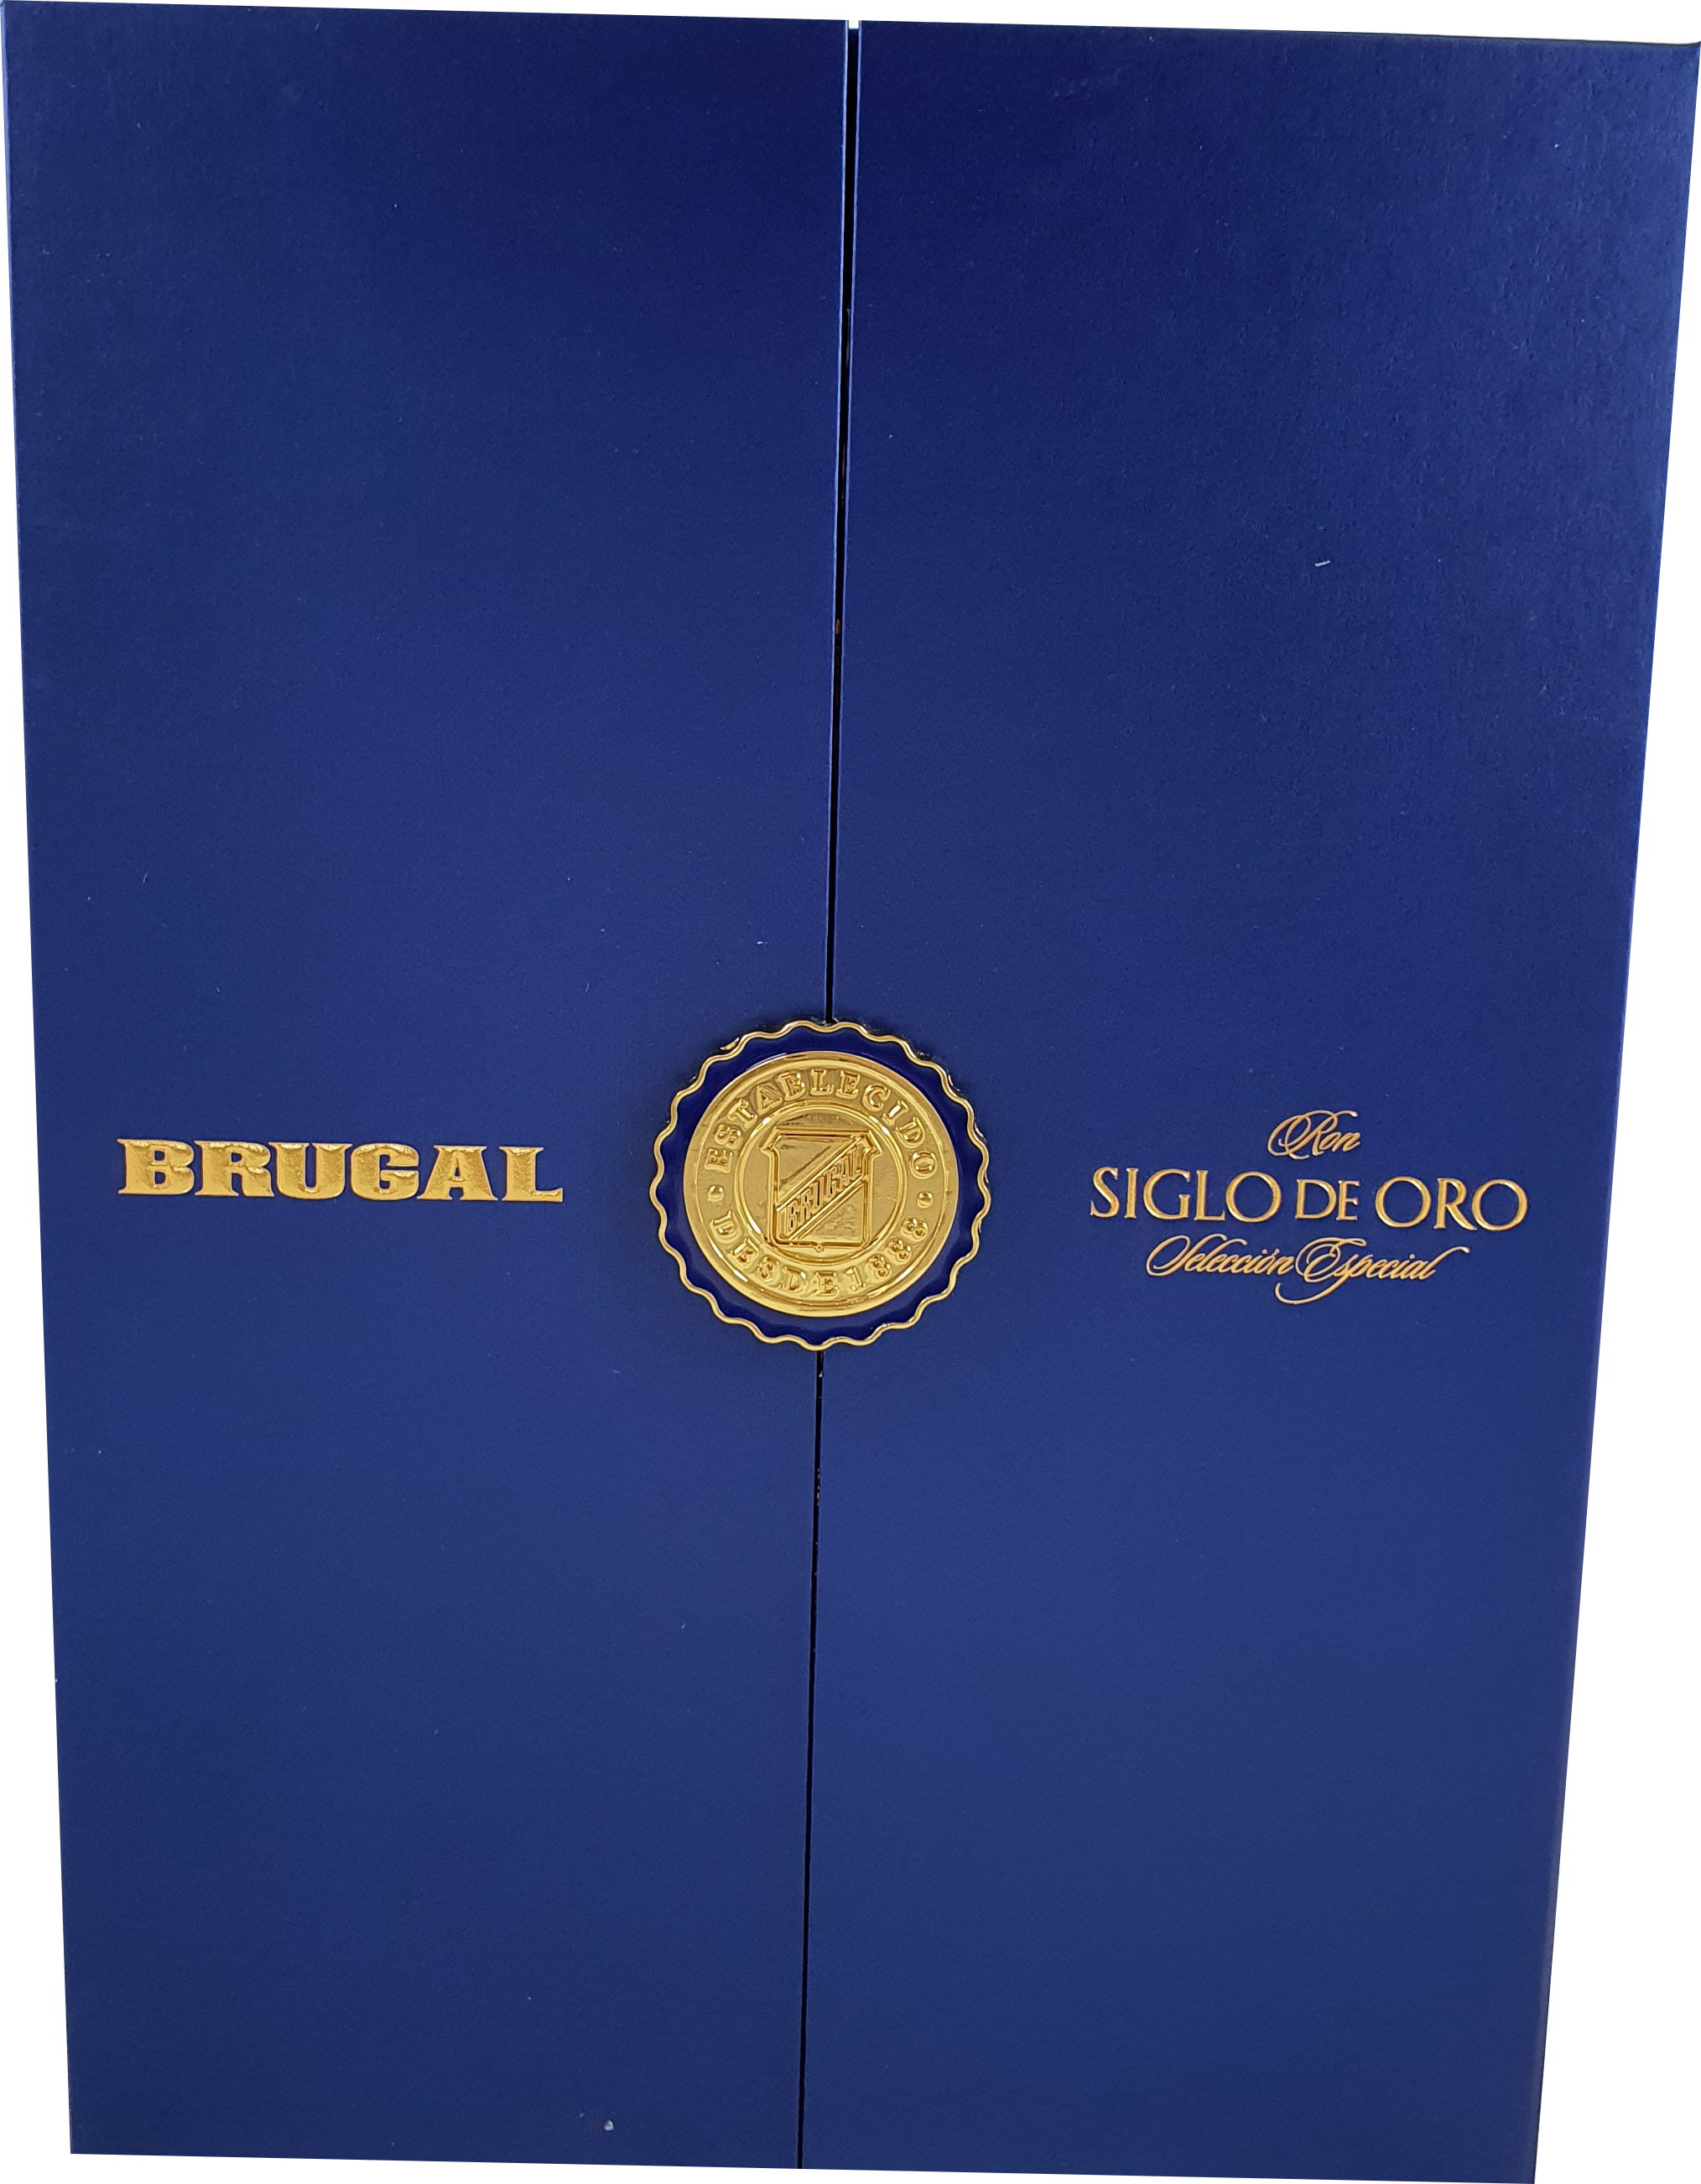 Brugal Siglo de Oro 40 % 0.7L